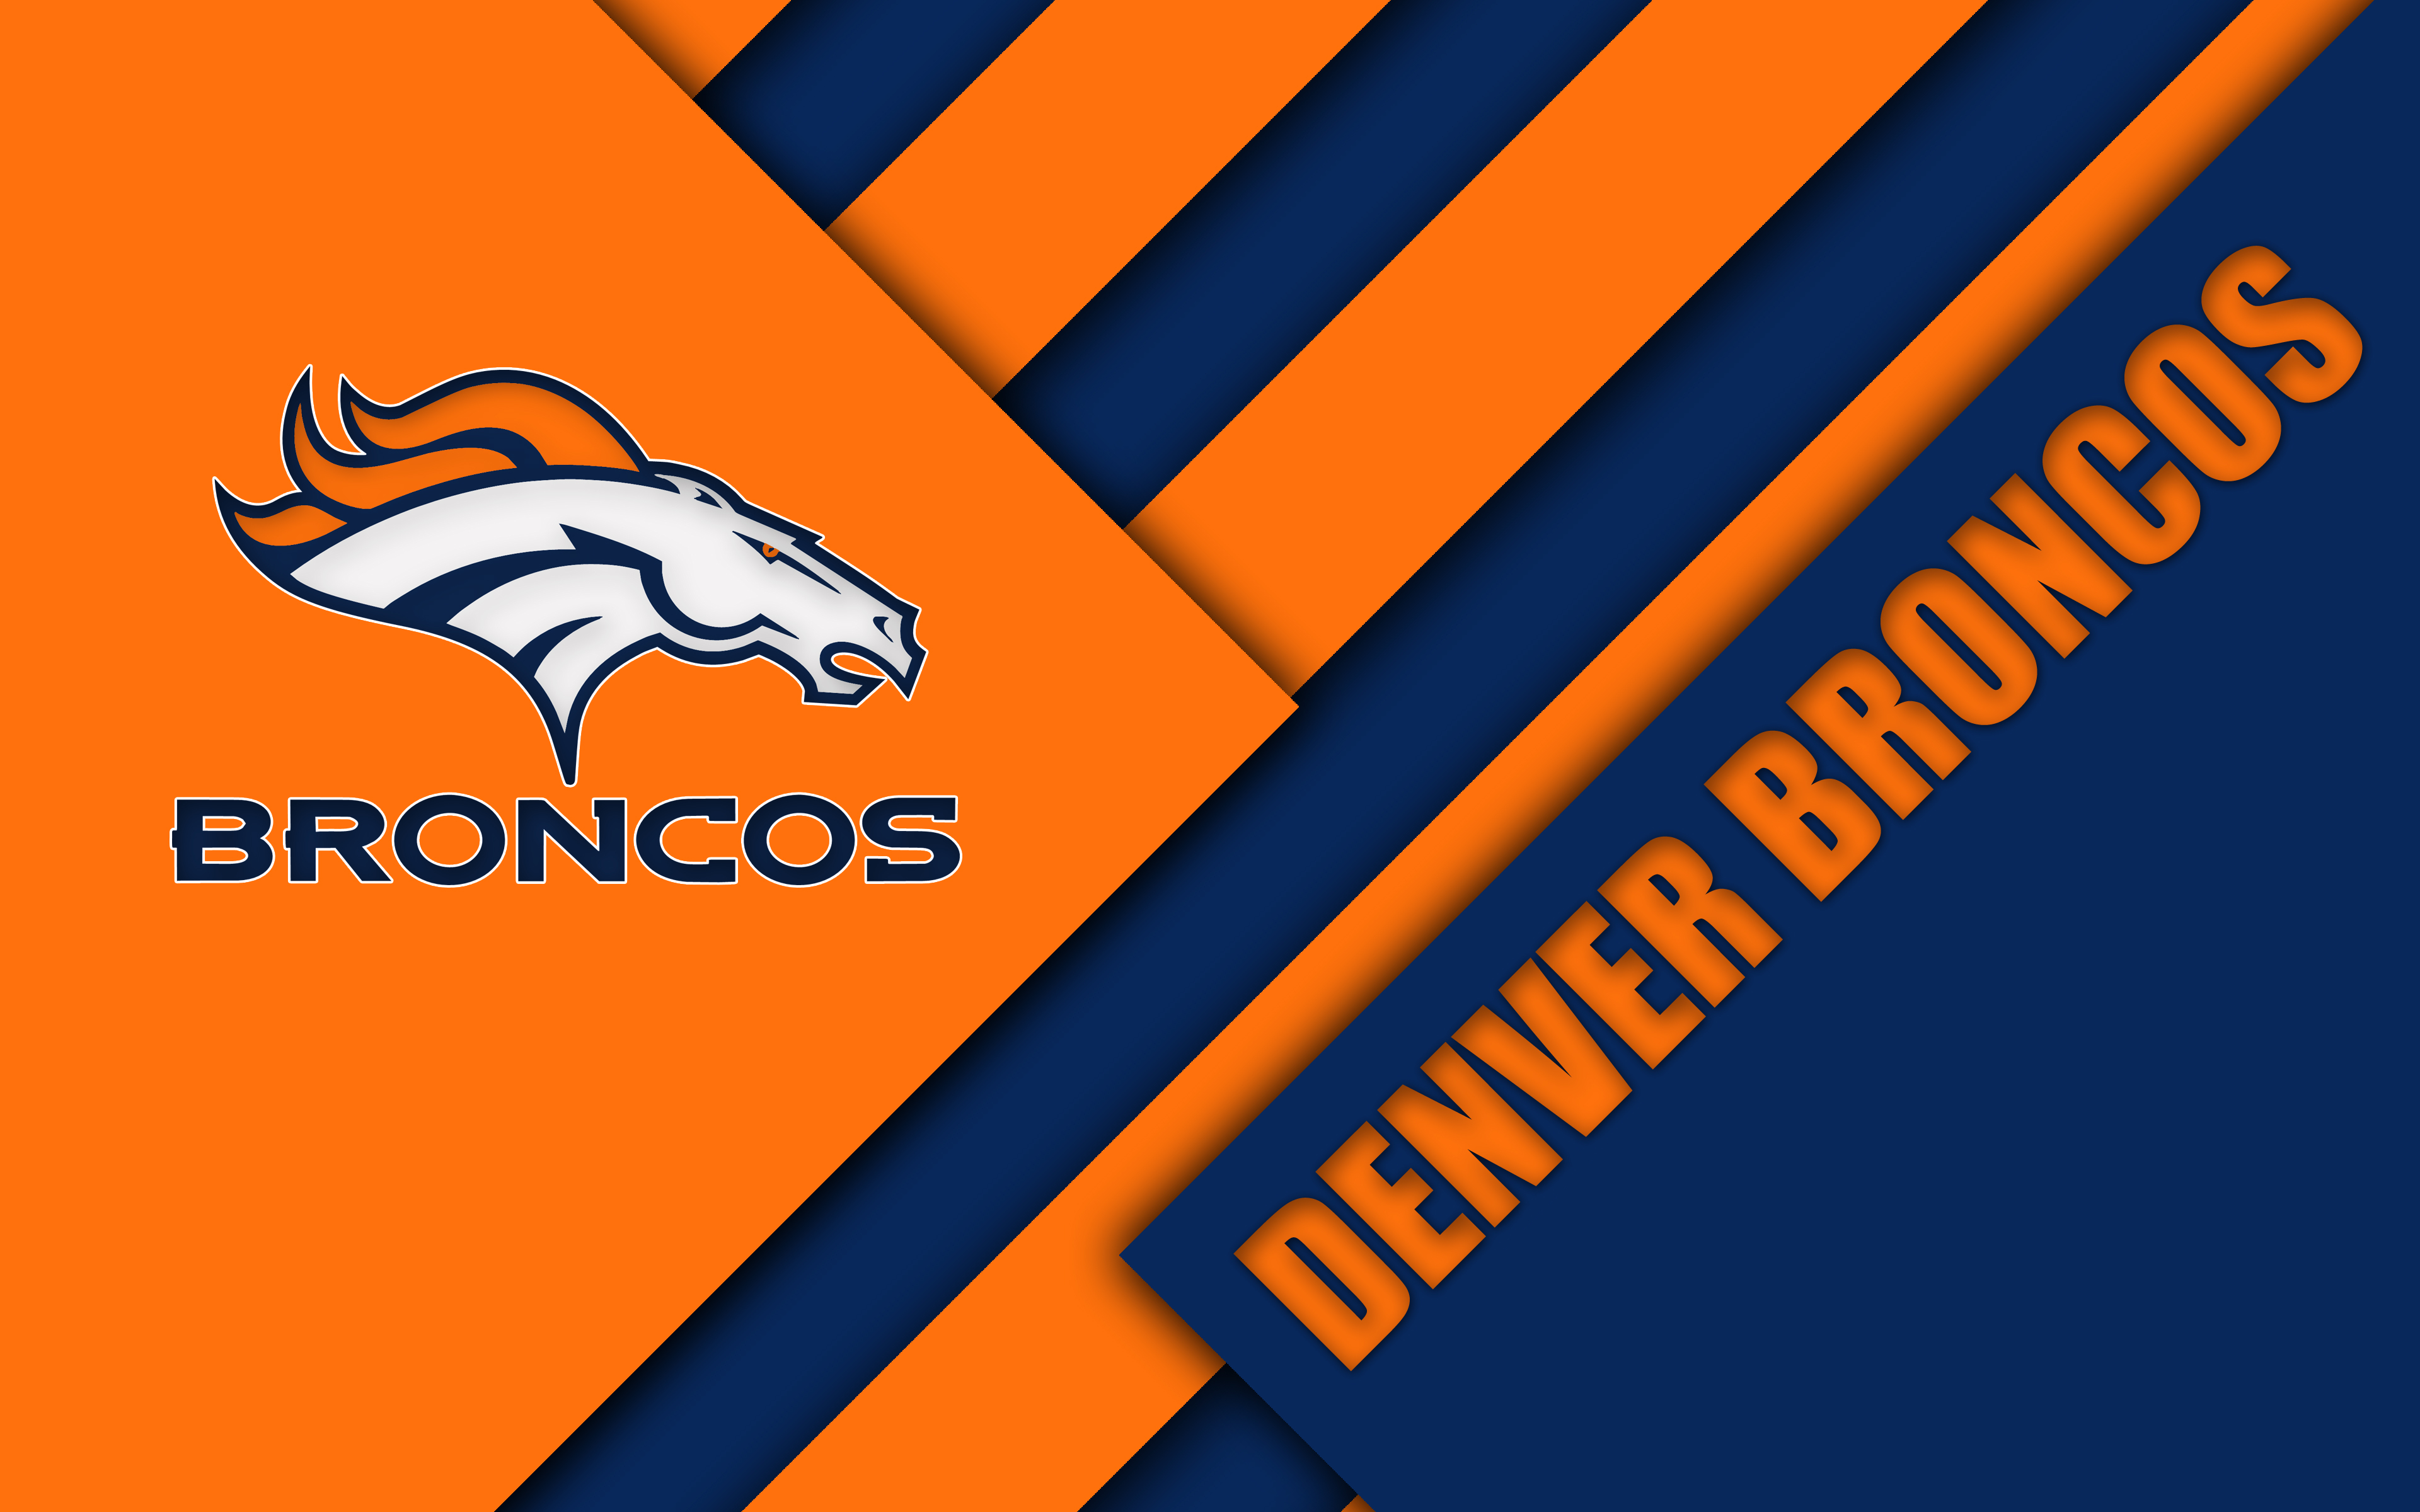 Denver Broncos Orange And Blue , HD Wallpaper & Backgrounds